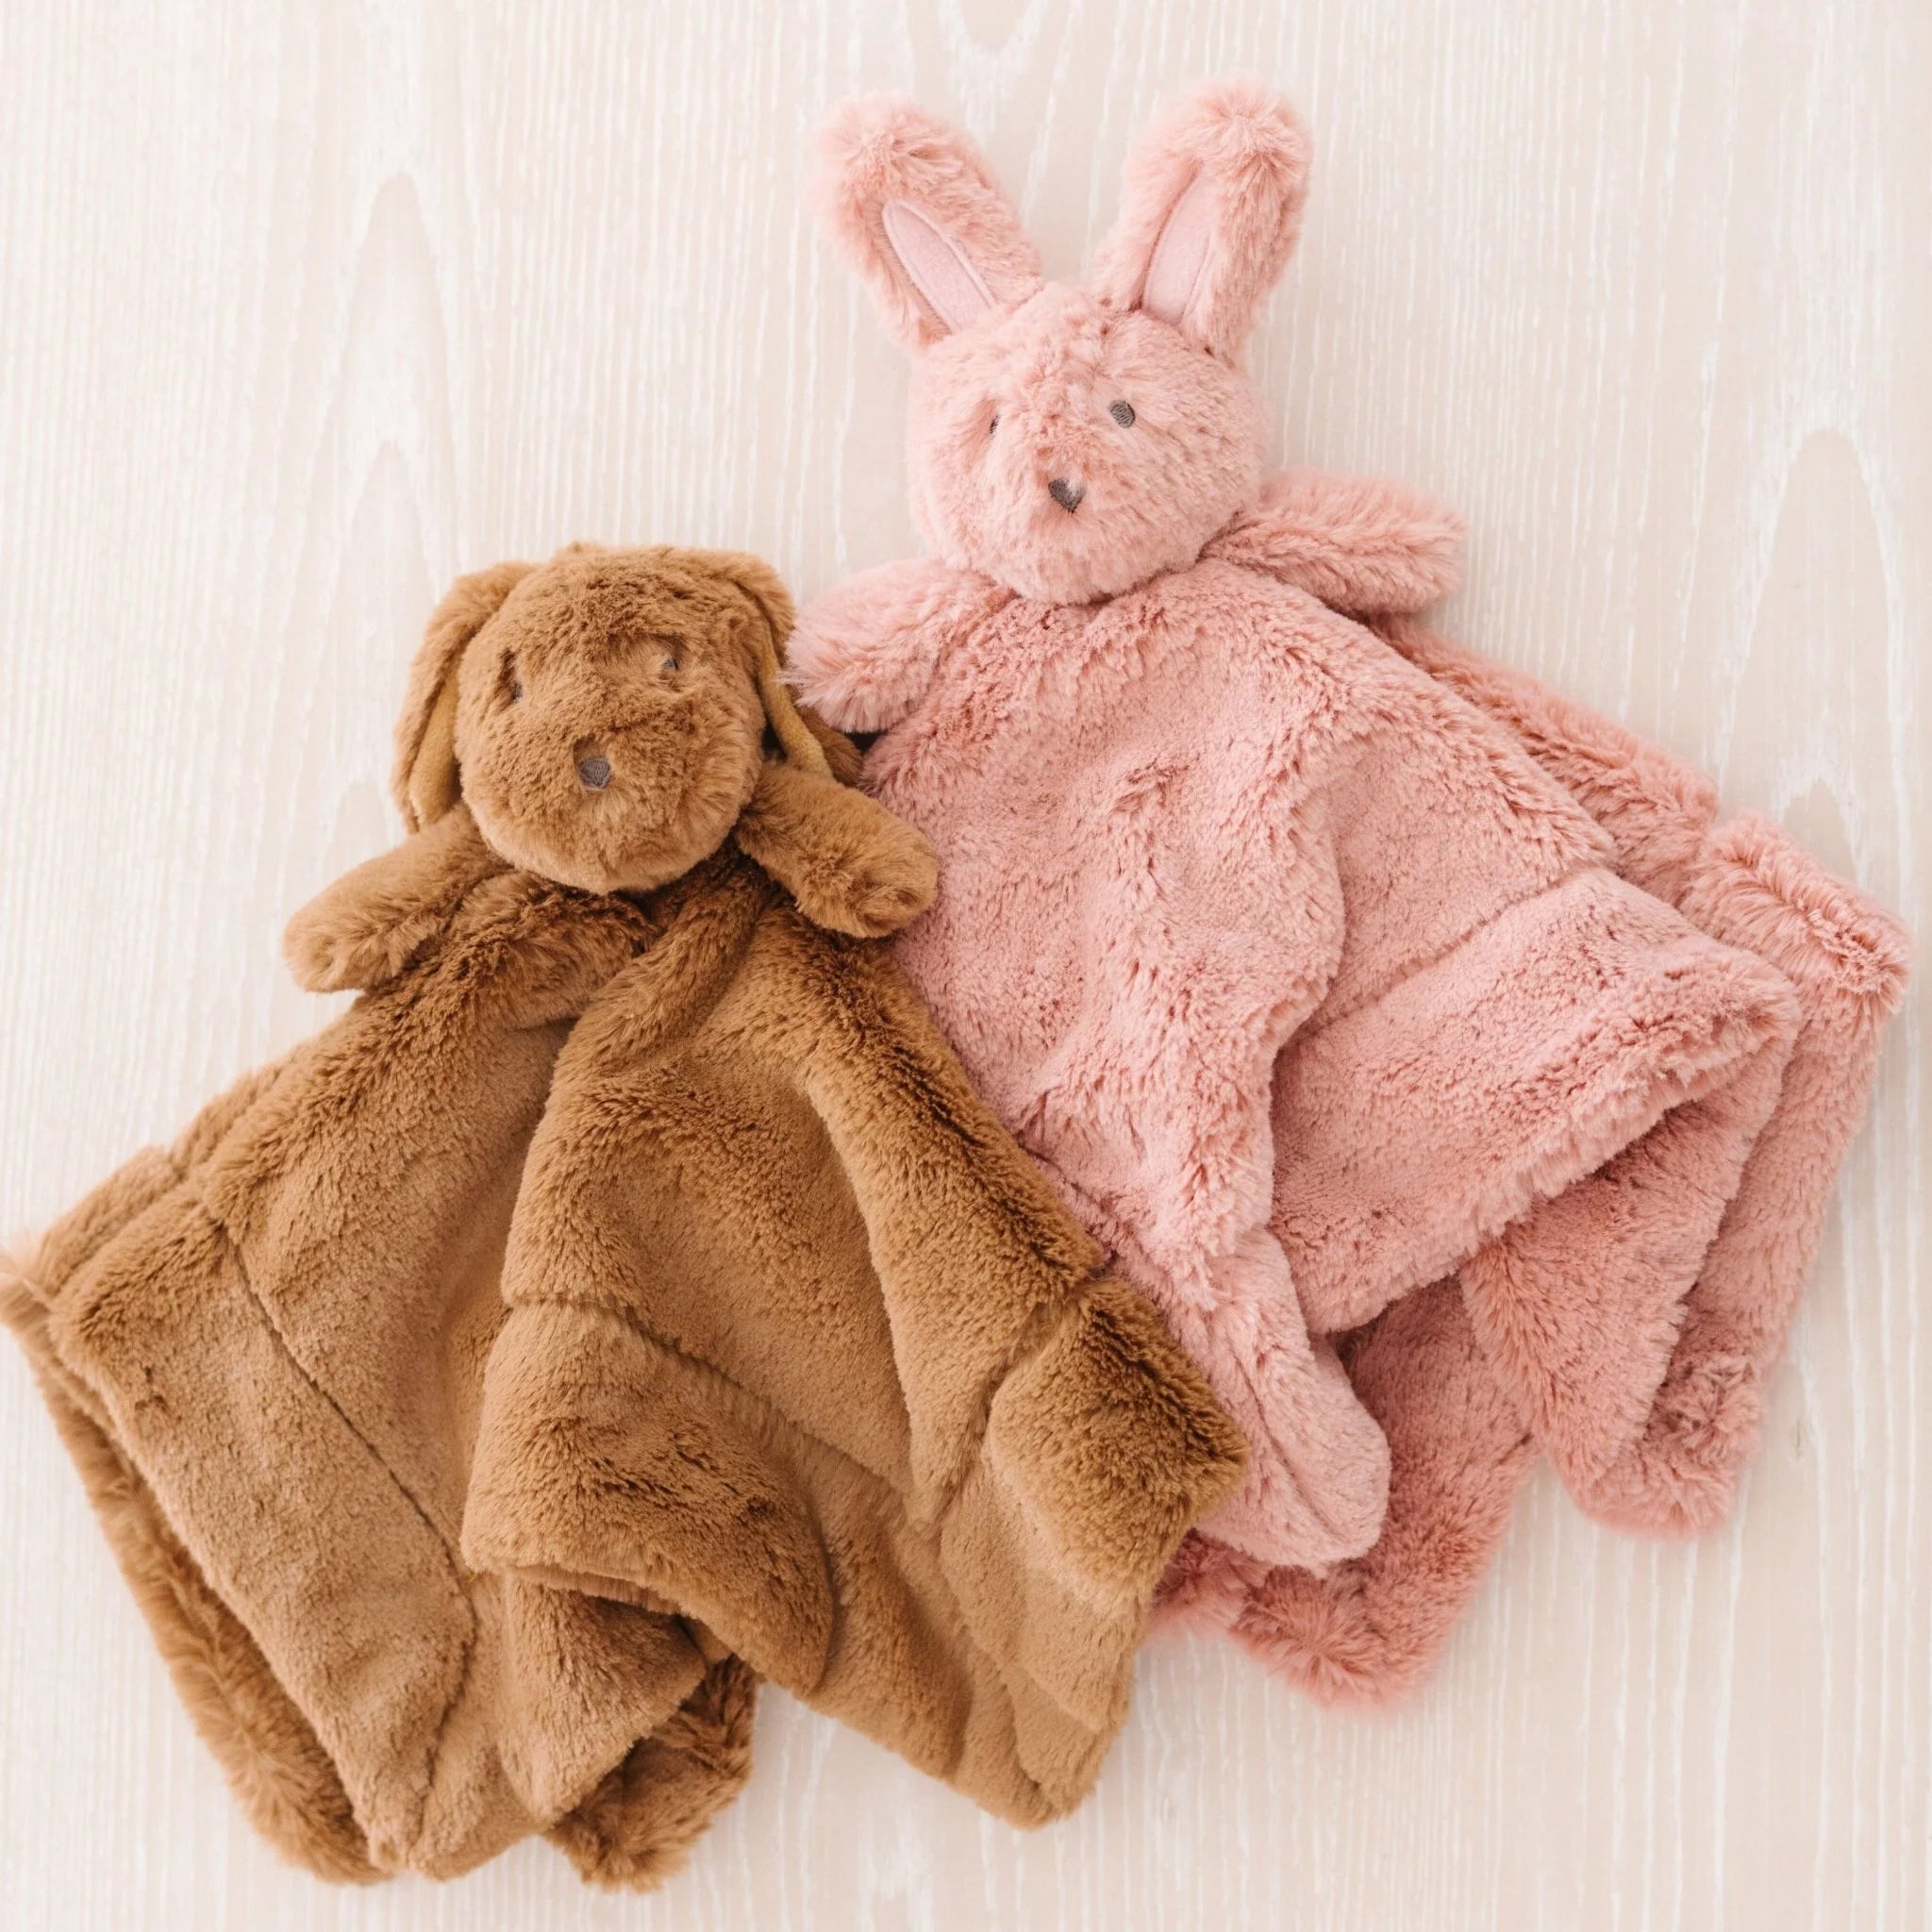 Puppy Stuffed Animal Lovey - Twinkle Twinkle Little One